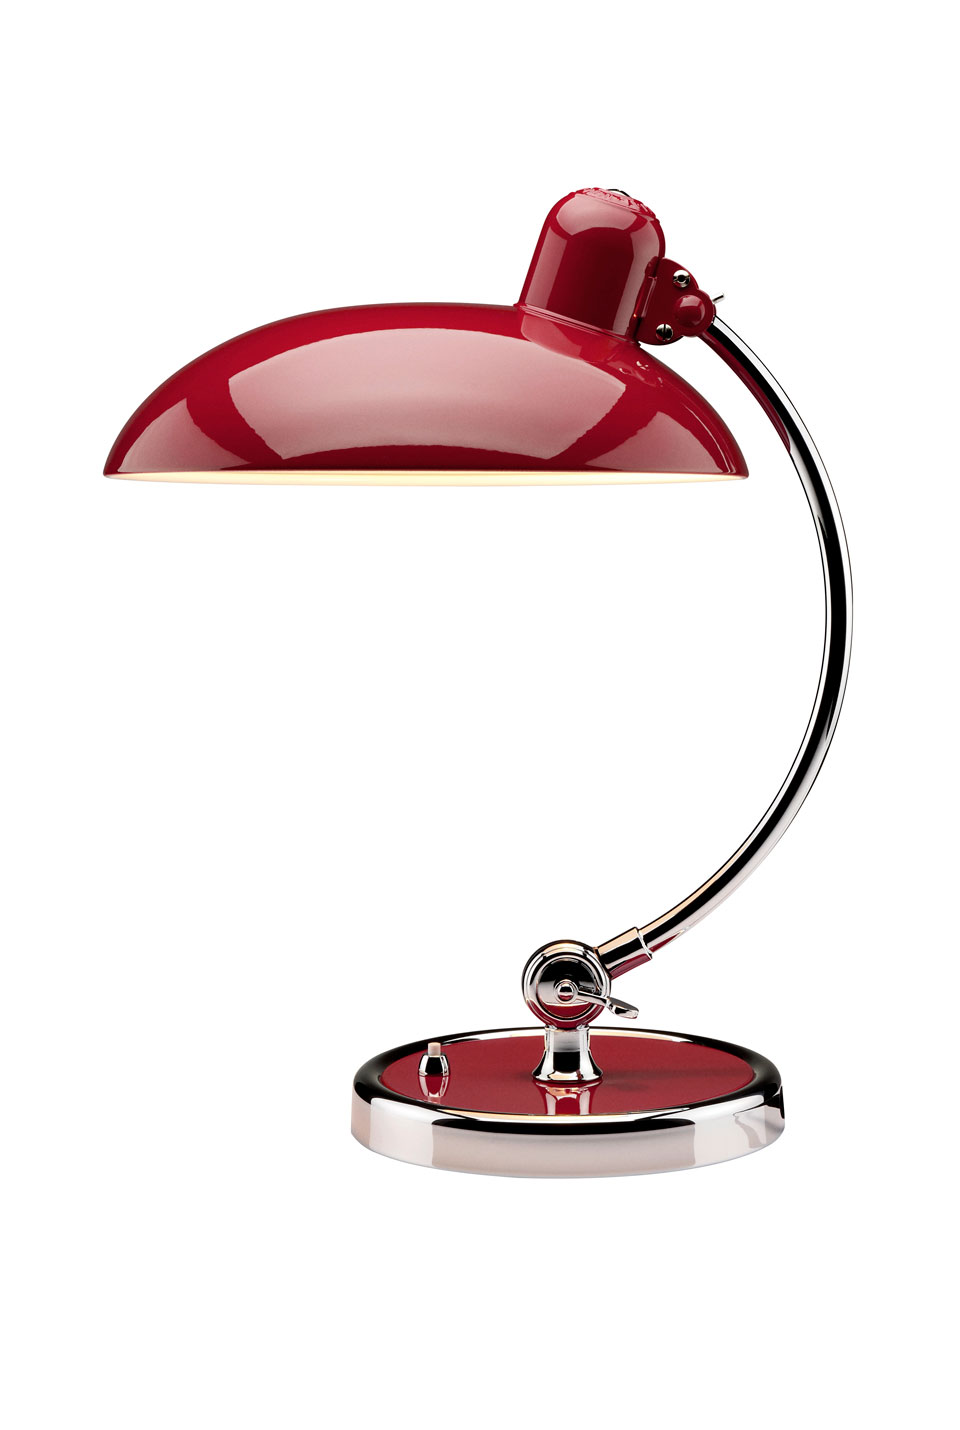 Kaiser Idell lampe de table Bauhaus articulée rouge rubis. Fritz Hansen. 